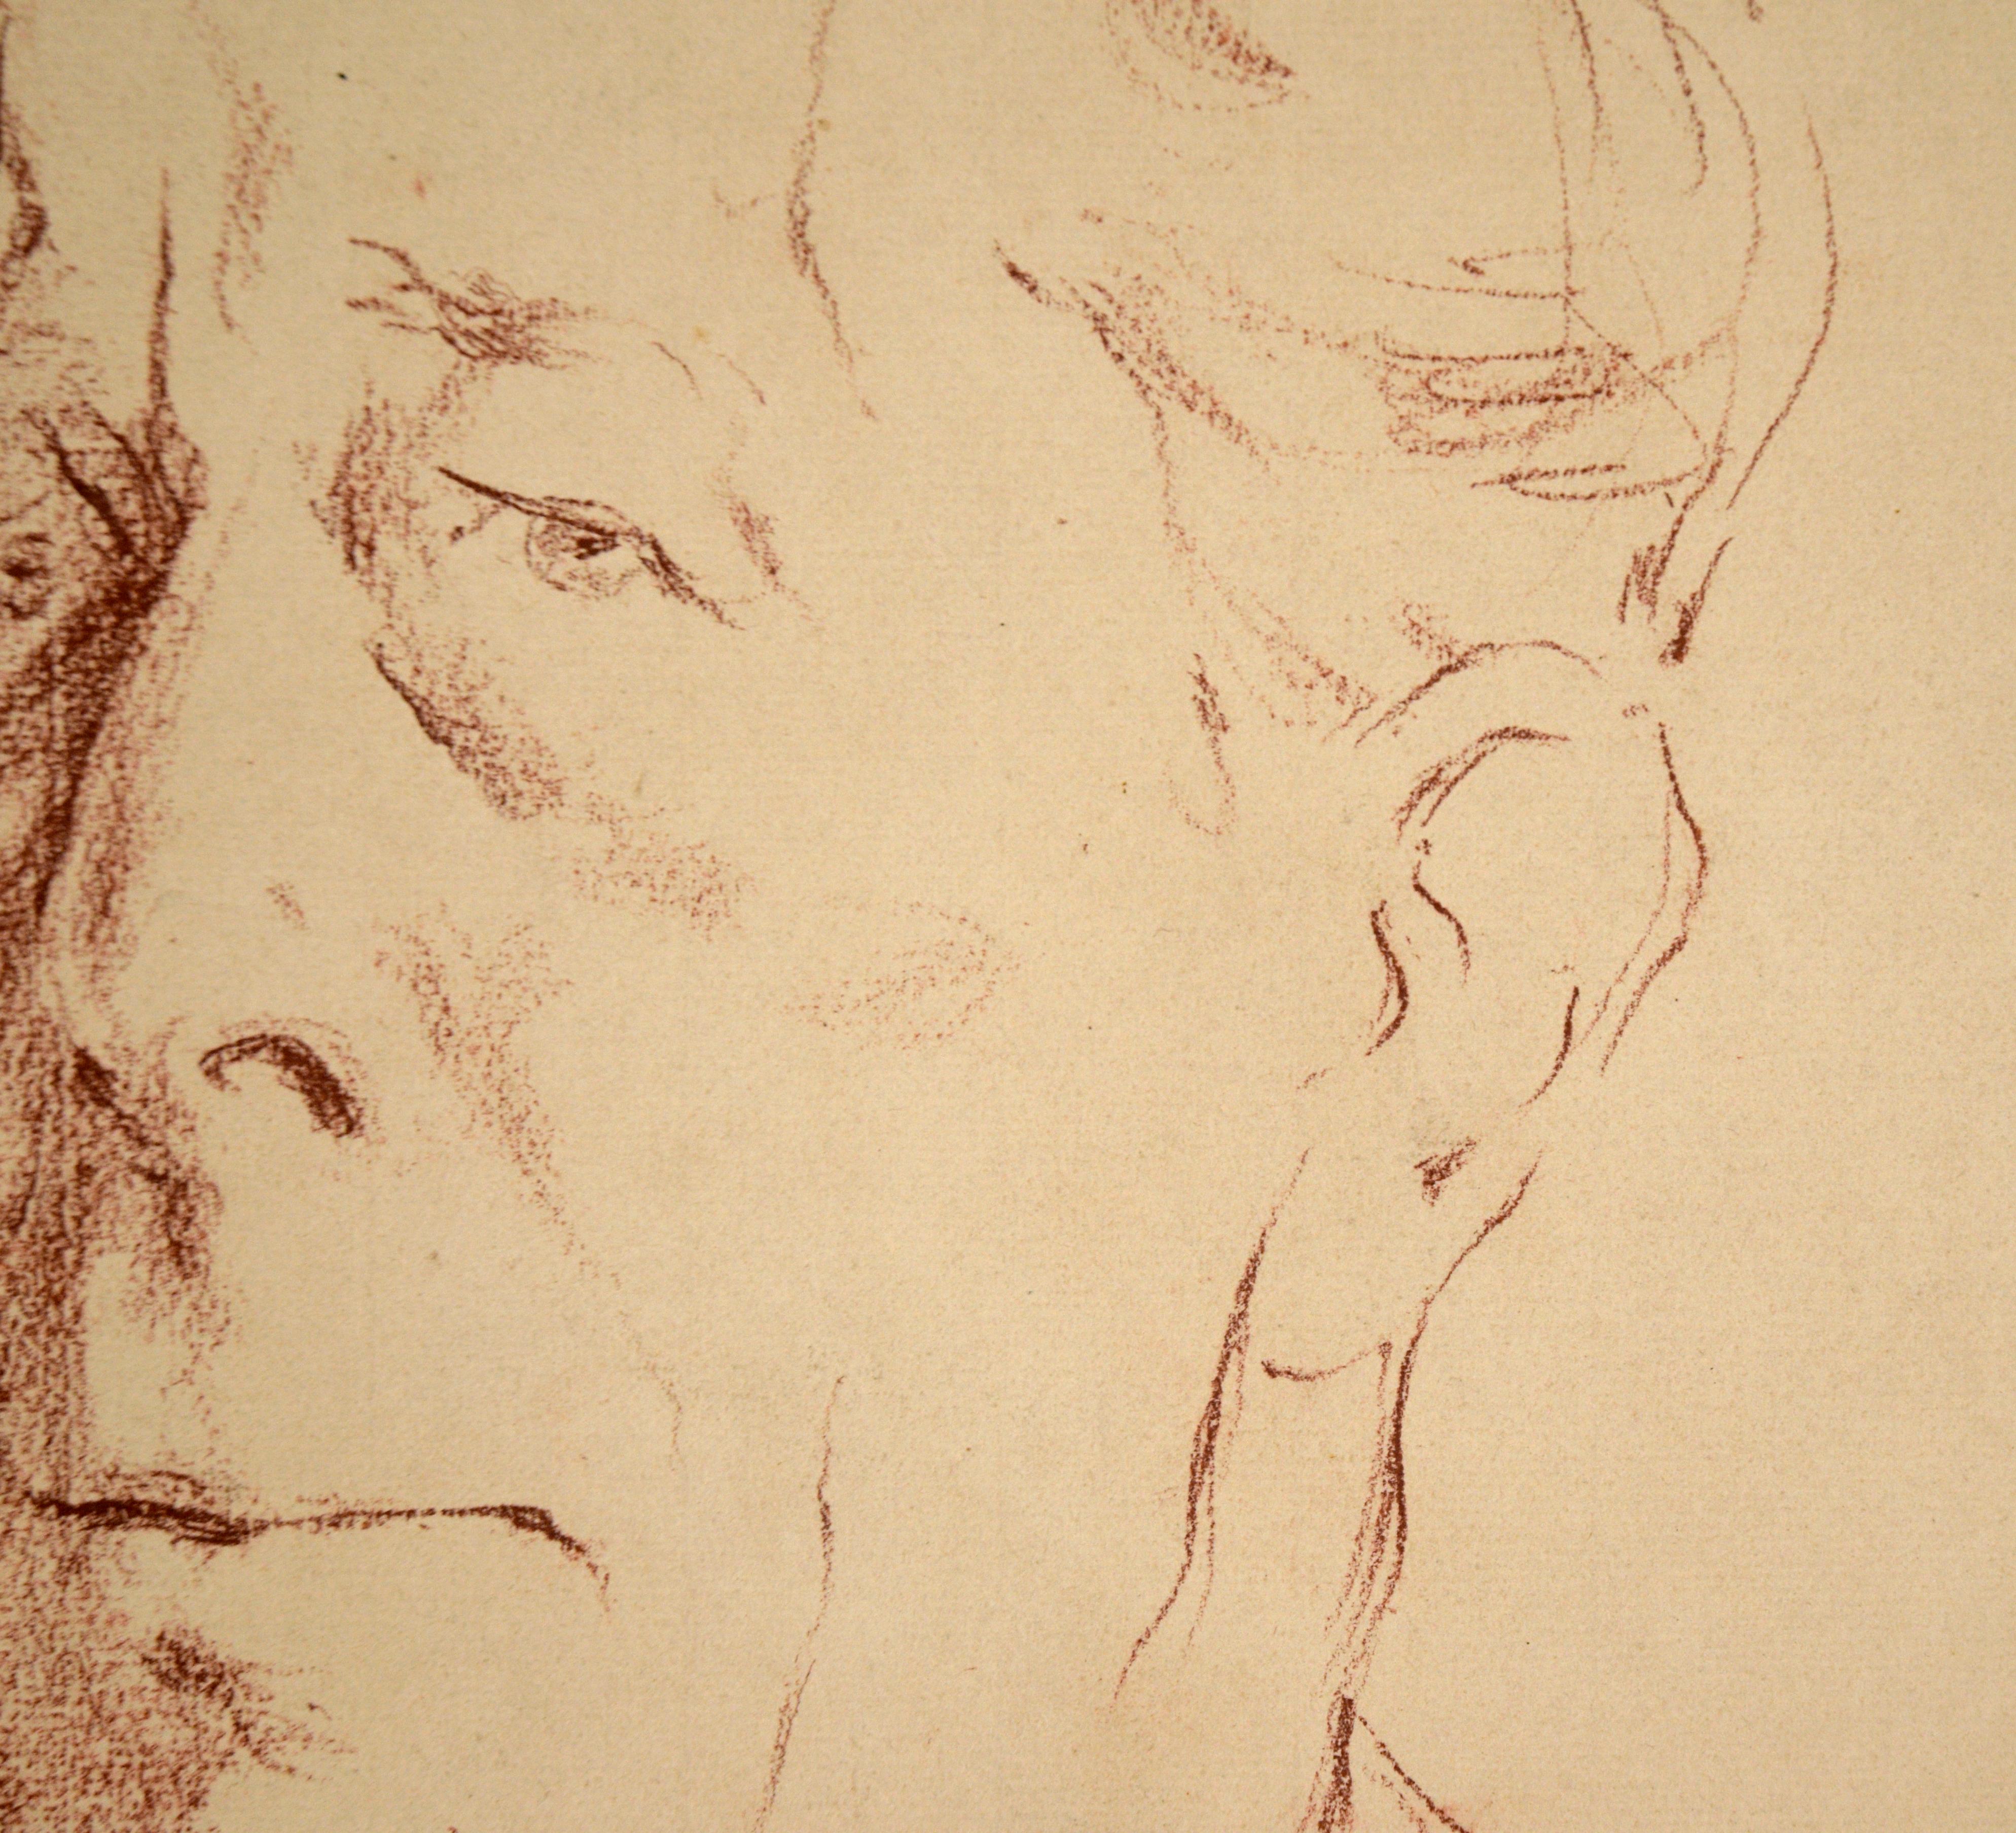 Stattliches Porträt von George Arliss von Ivan Opffer (Däne, 1897-1980). Herr Arliss ist mit seinem charakteristischen Monokel abgebildet und schaut den Betrachter direkt an. Obwohl dieses Werk schnell entstanden zu sein scheint, ist das Vertrauen